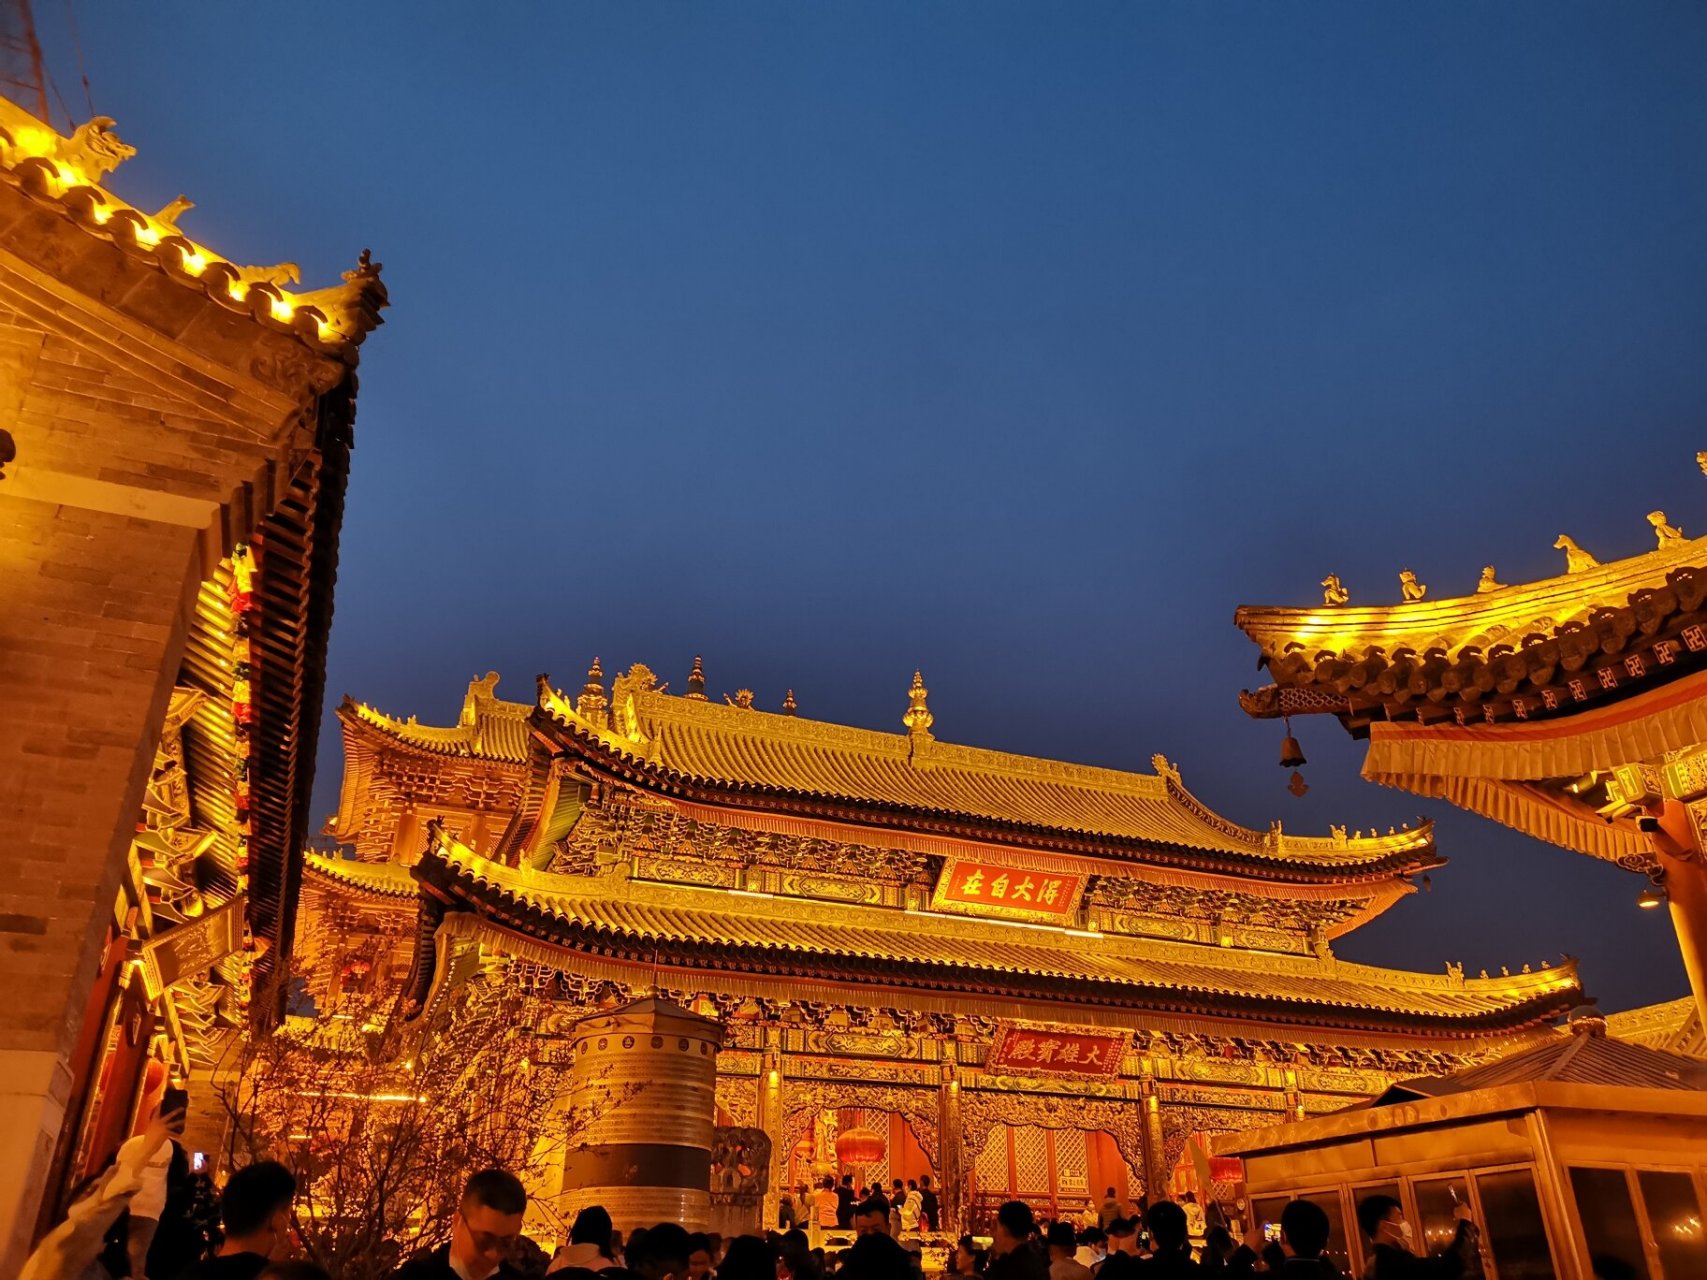 五台山夜间打卡圣地——广化寺 广化寺是五台山唯一开放夜景的寺庙